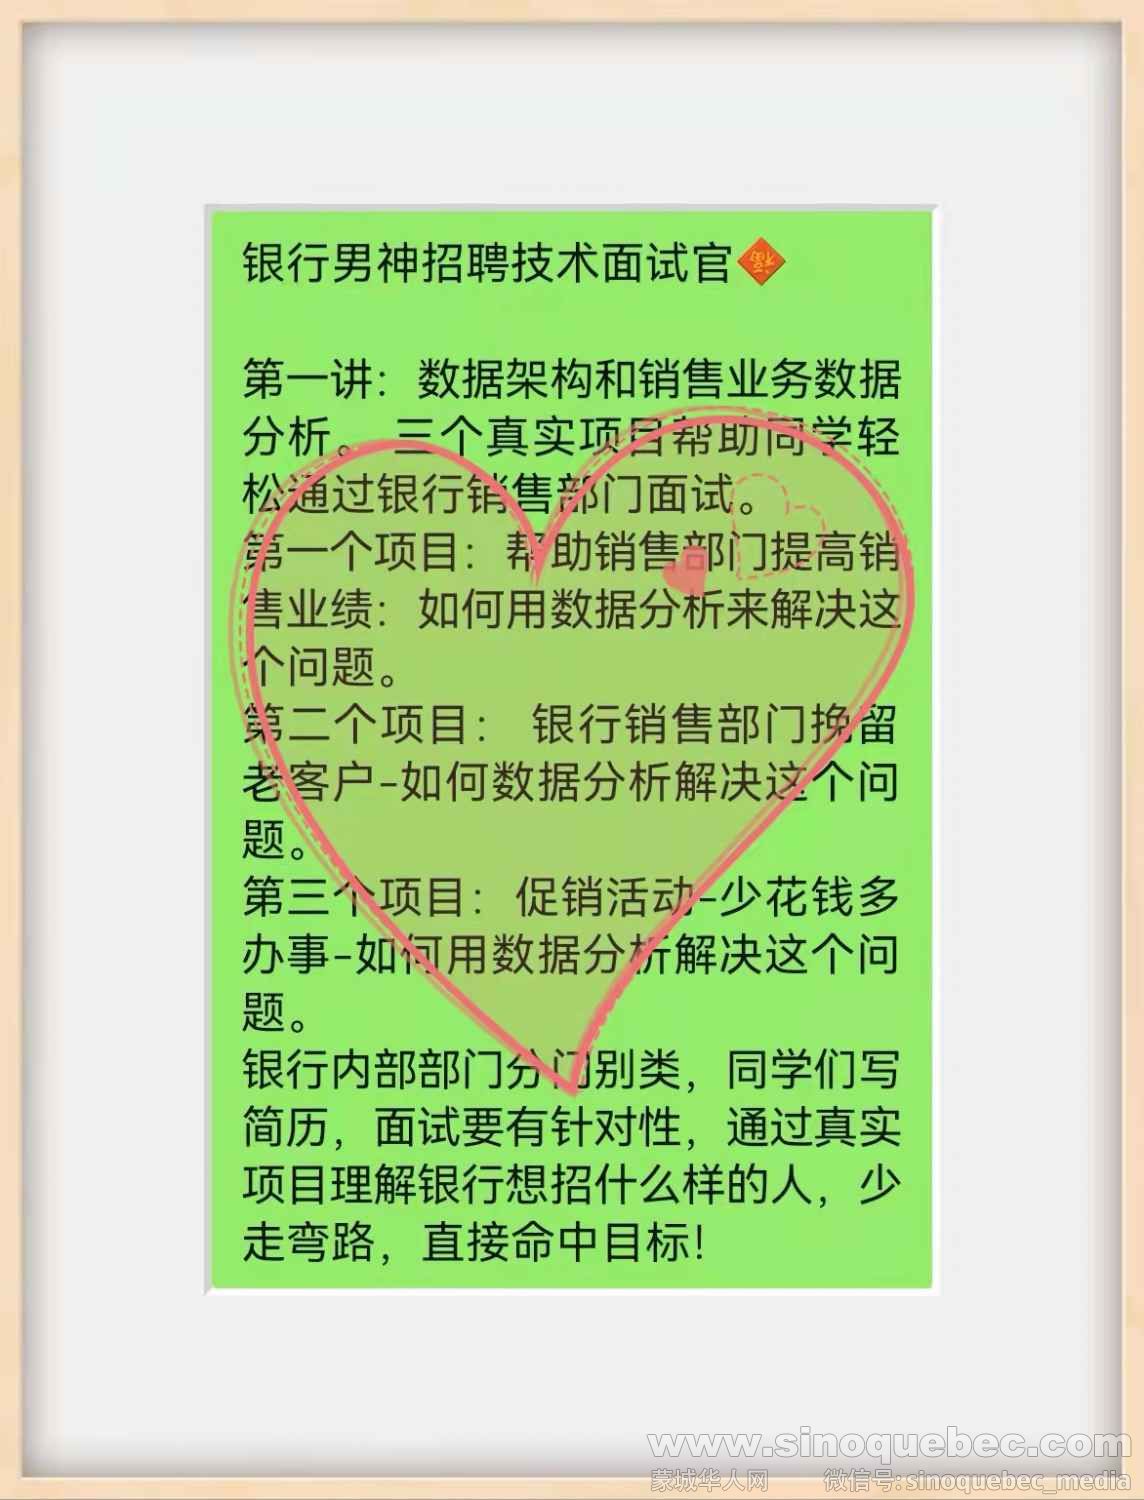 WeChat Image_20220128144147.jpg